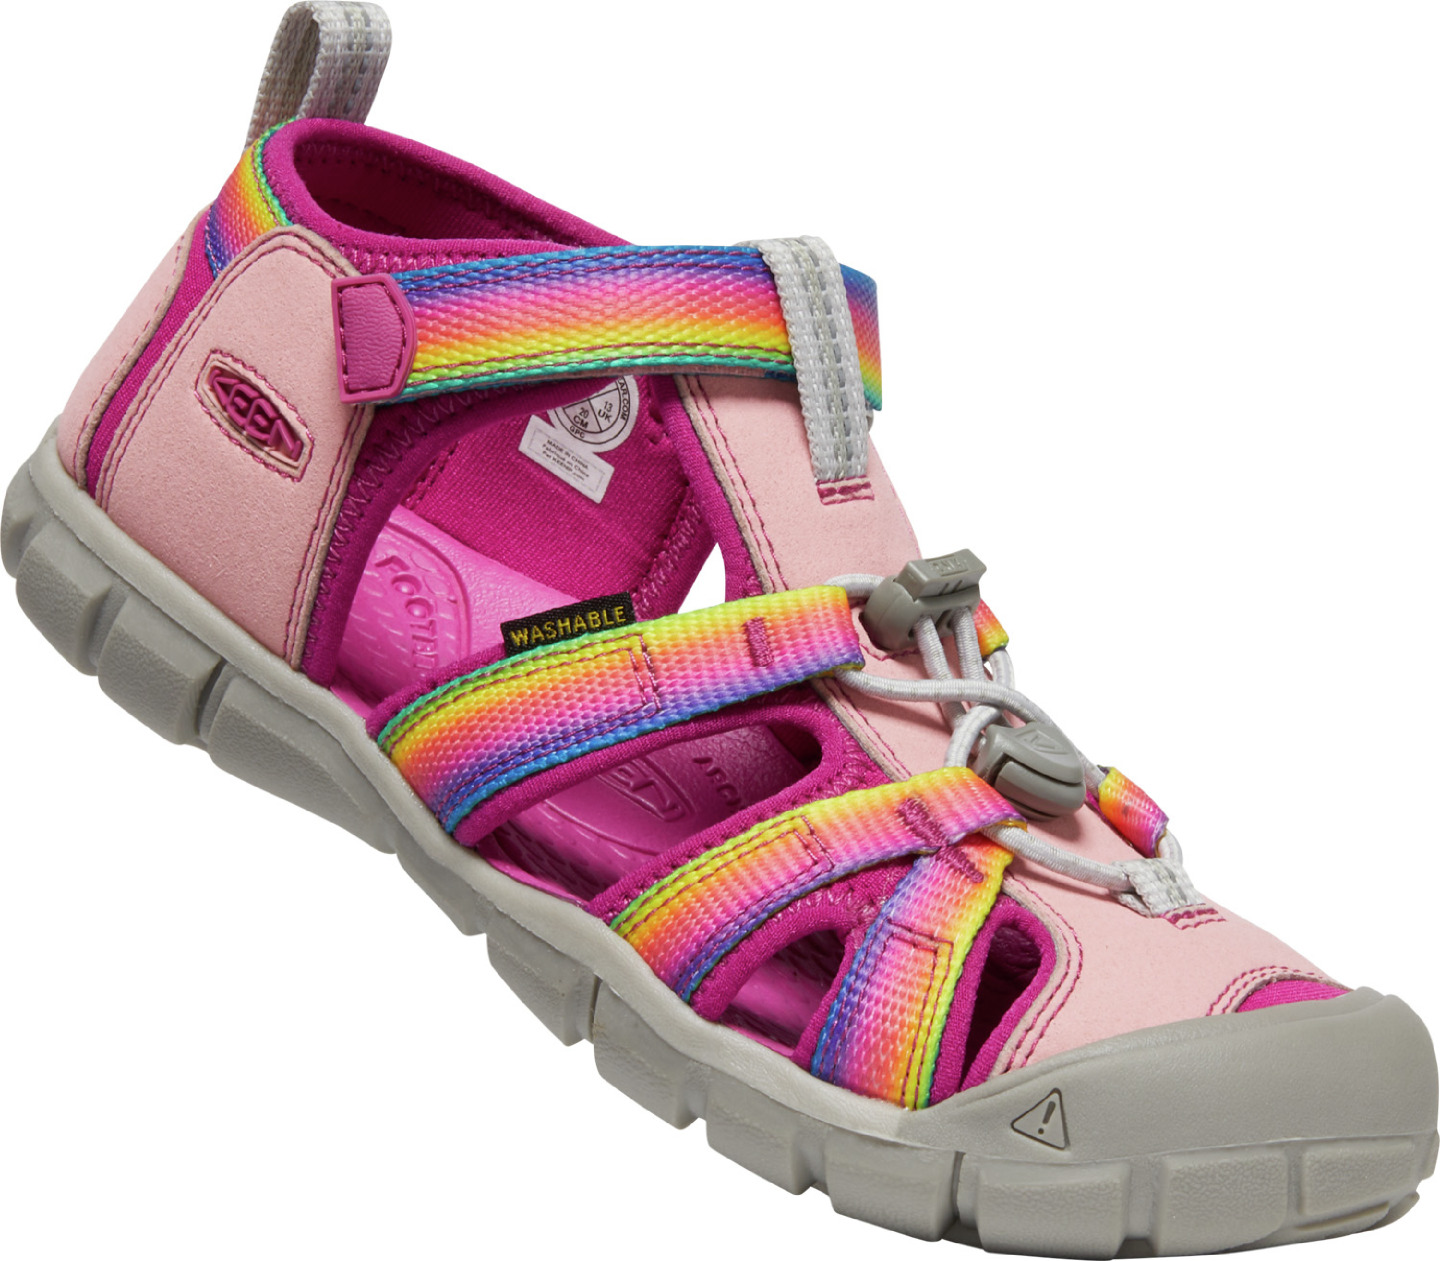 Keen SEACAMP II CNX YOUTH rainbow/festival fuchsia Velikost: 35 dětské sandály